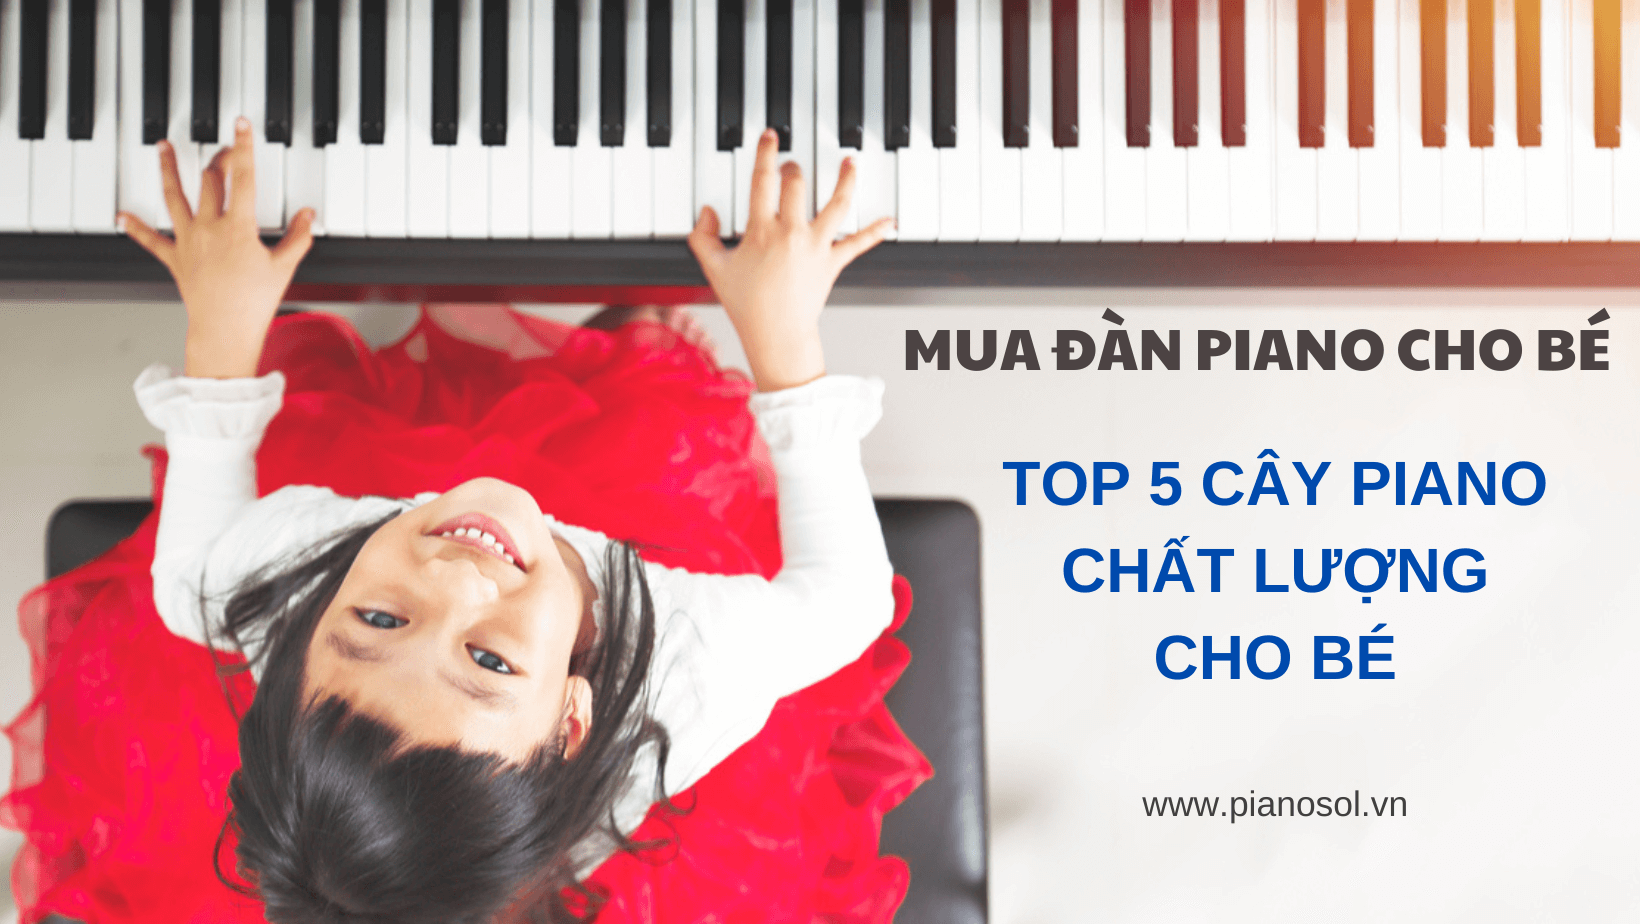 Mua đàn piano cho bé - Top 5 cây piano chất lượng cho bé